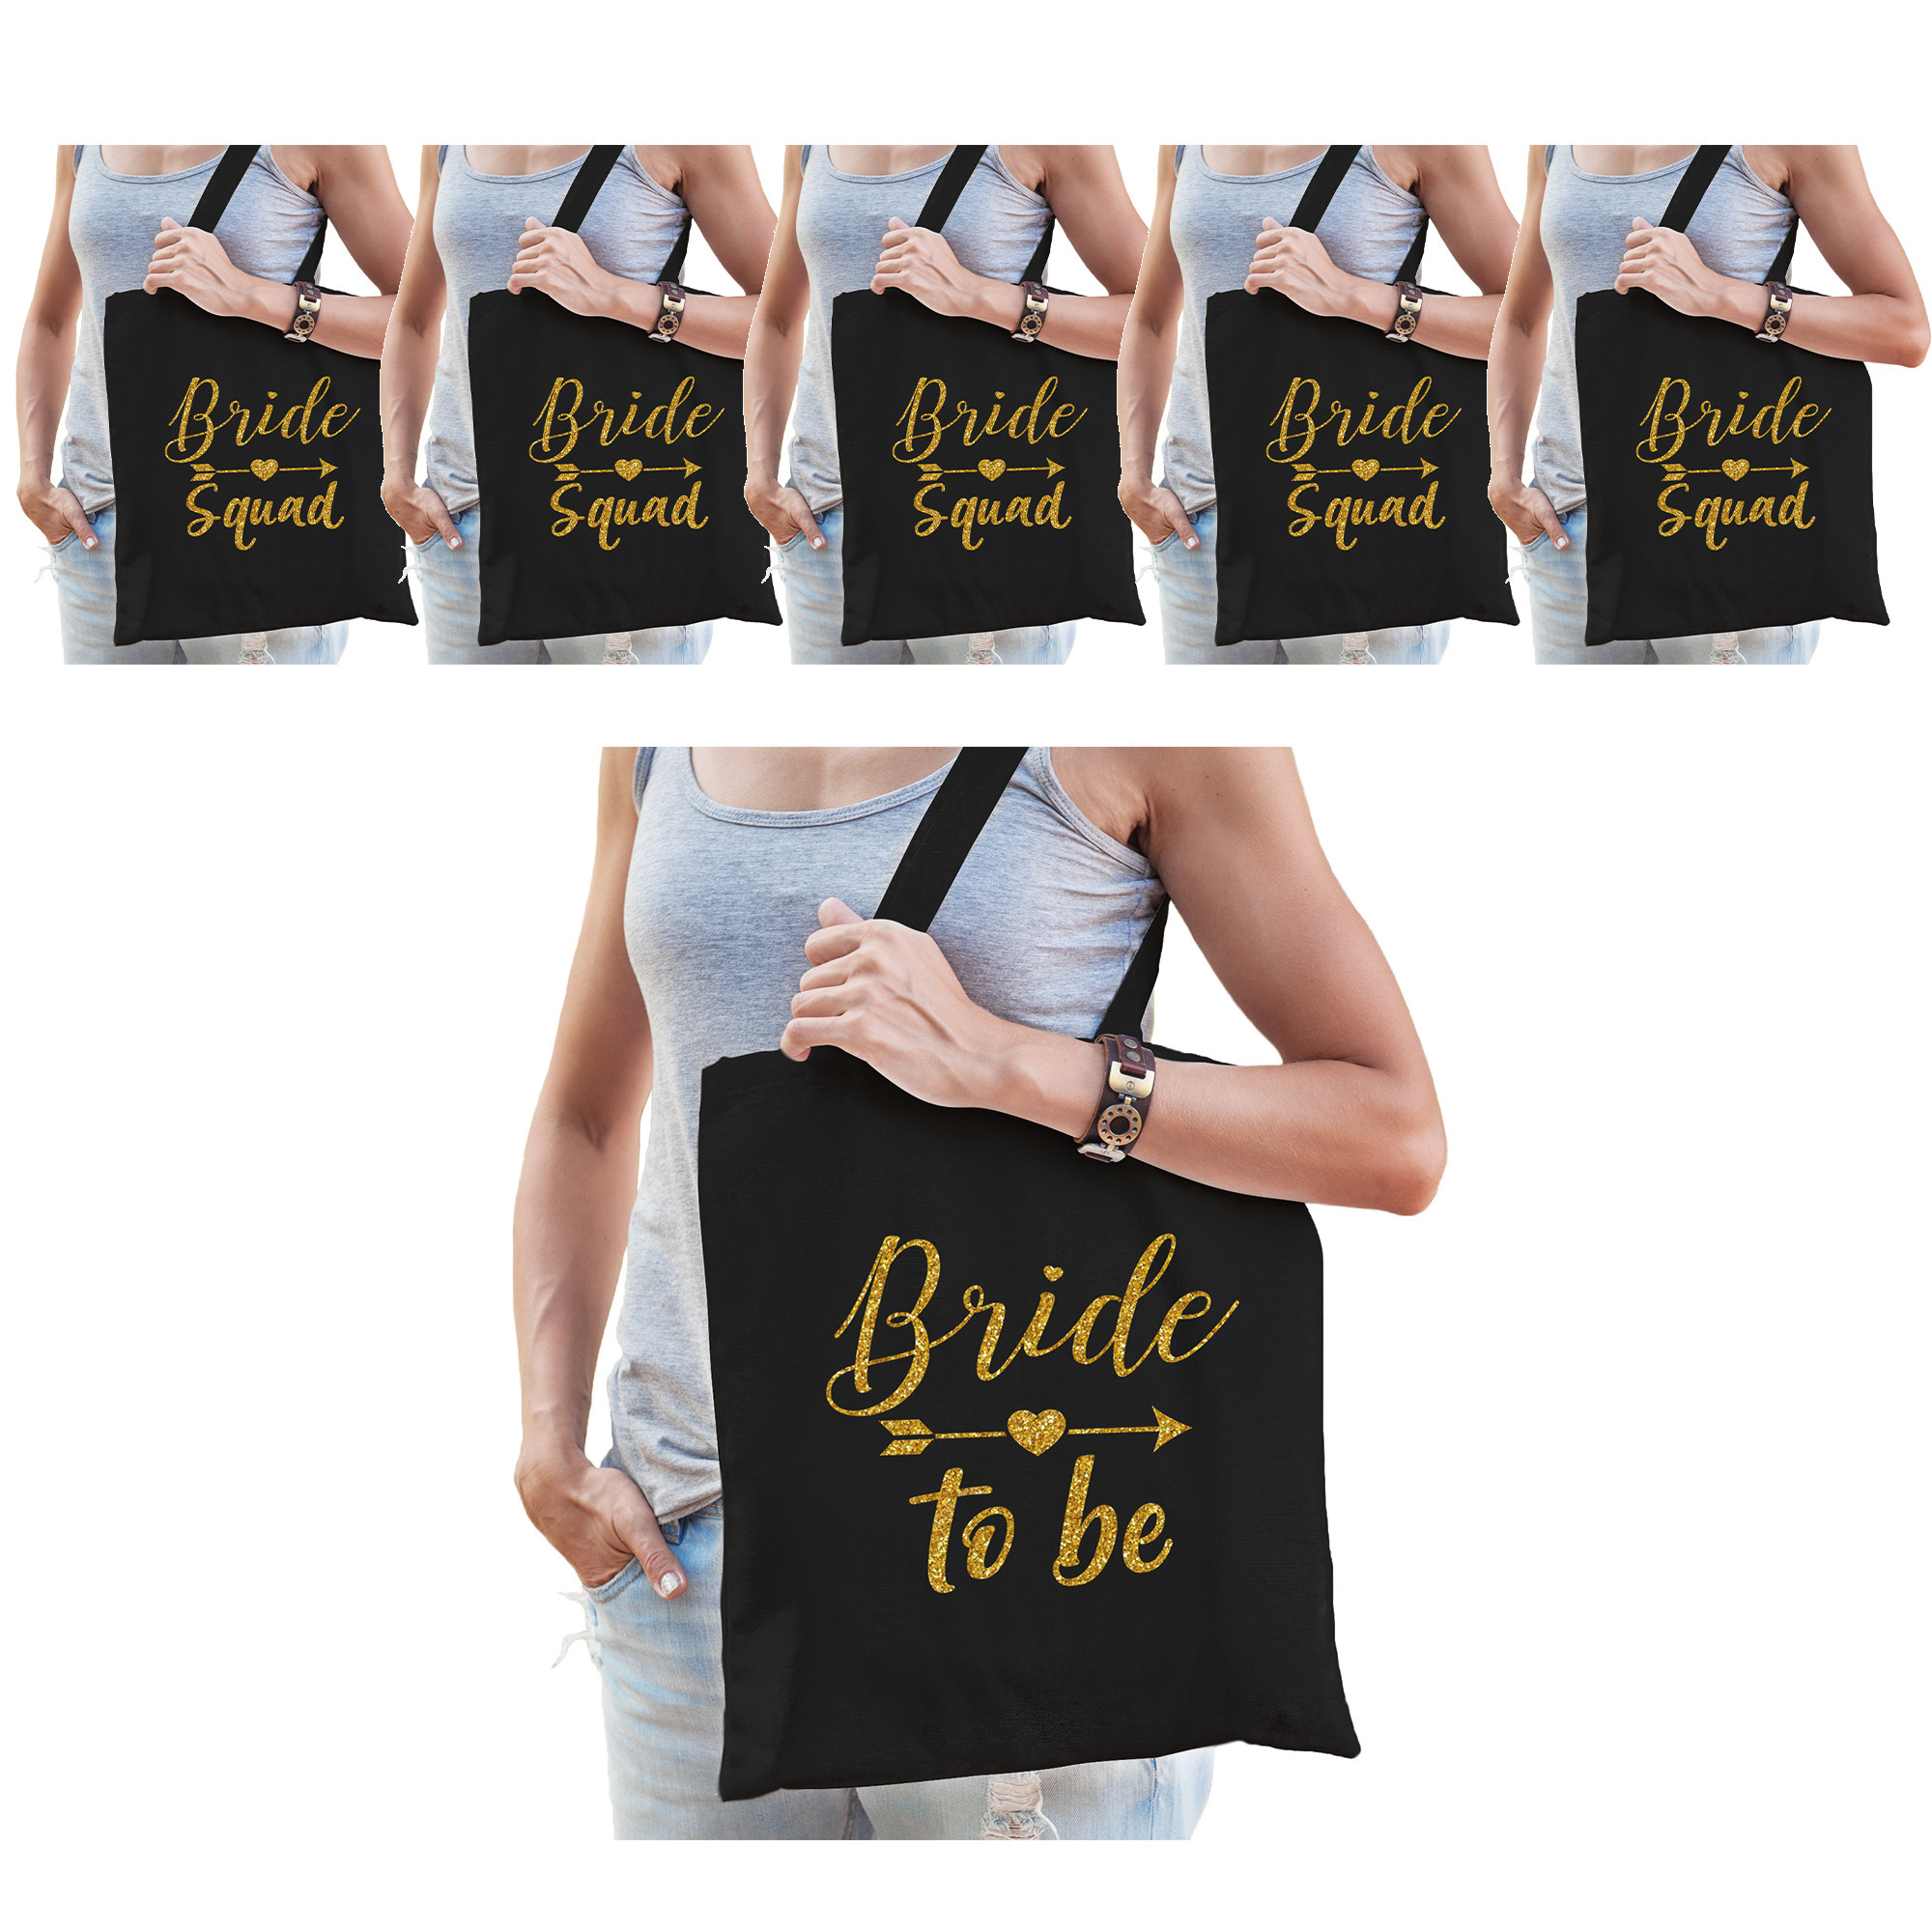 Vrijgezellenfeest dames tasjes/ goodiebag pakket: 1x Bride to Be zwart goud+ 5x Bride Squad zwart go